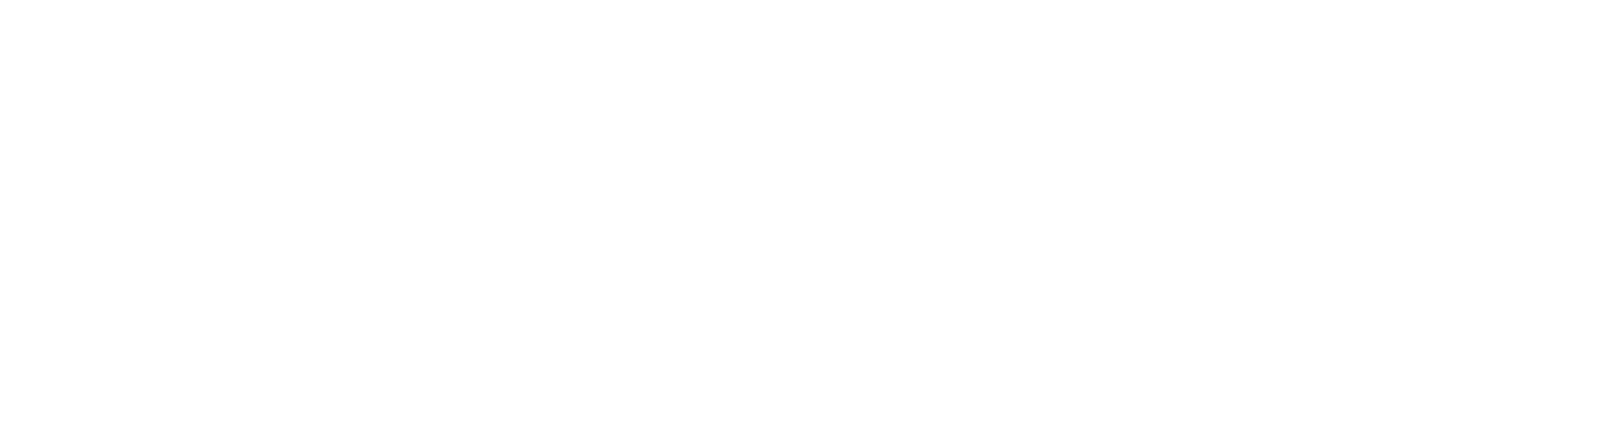 Luxury-PortfolioWhite.png